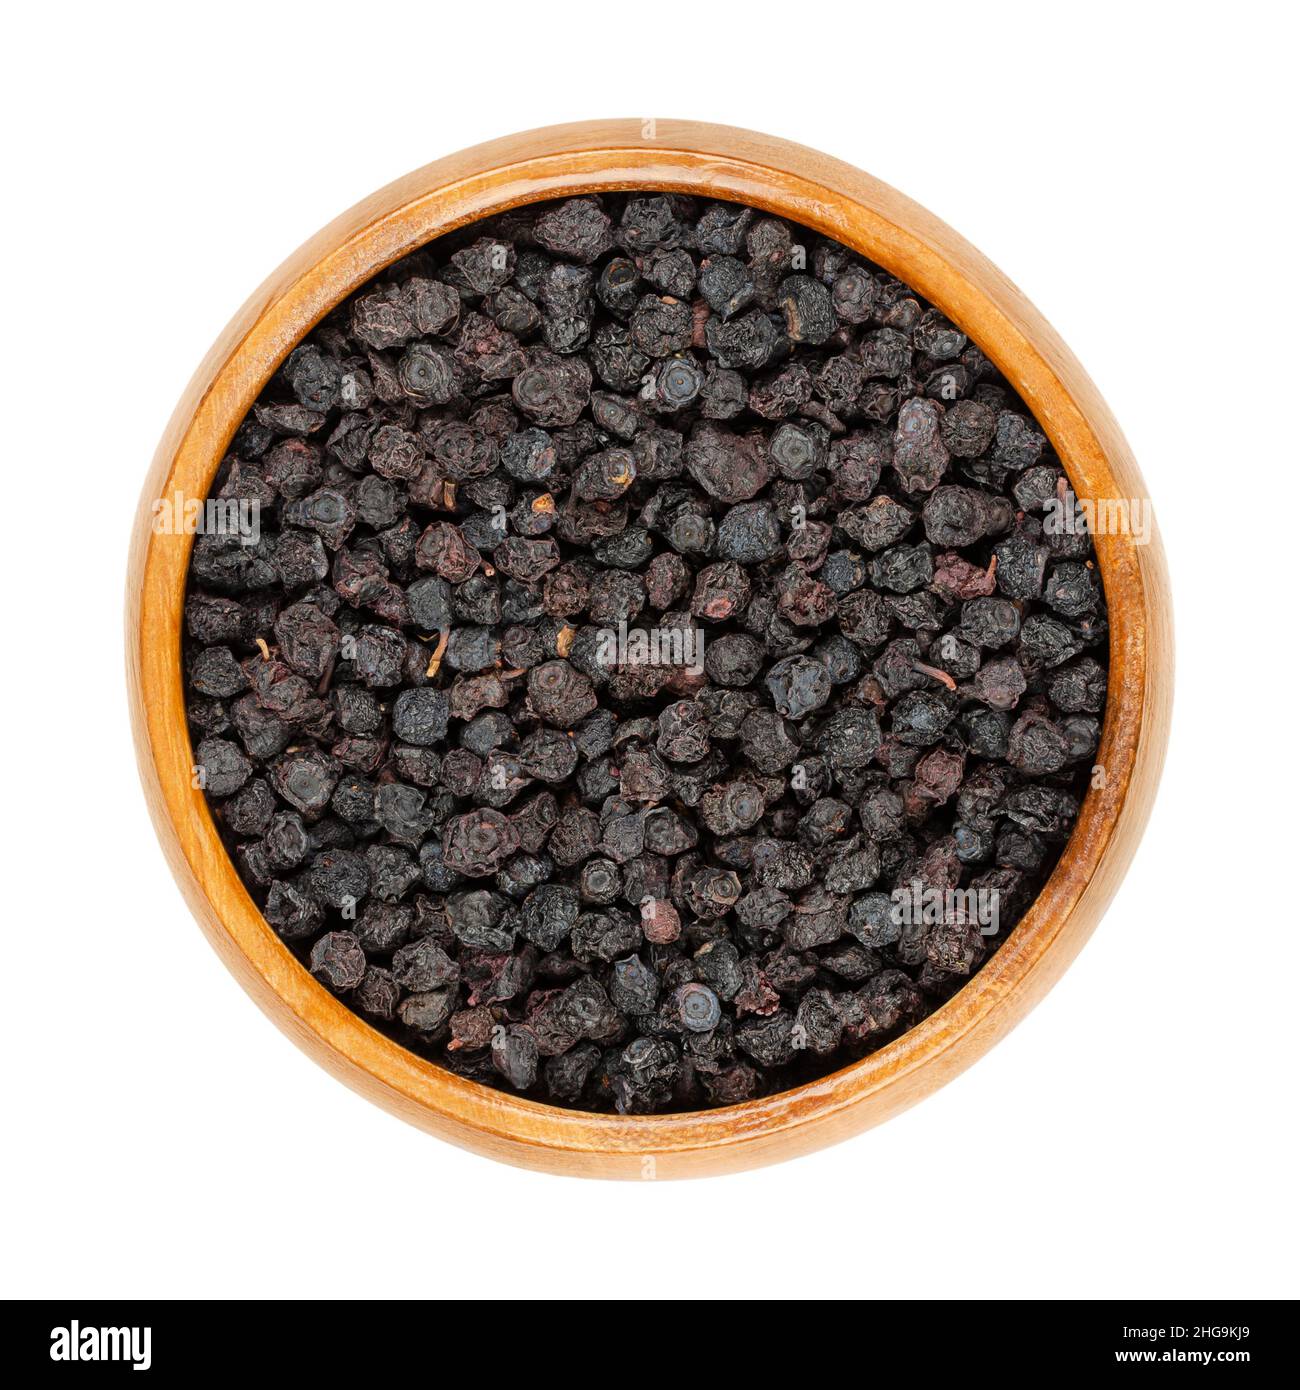 Myrtilles séchées, bleuets européens, dans un bol en bois.Fruits mûrs et crus de Vaccinium myrtillus, également connu sous le nom de blaeberry et de wimberry. Banque D'Images